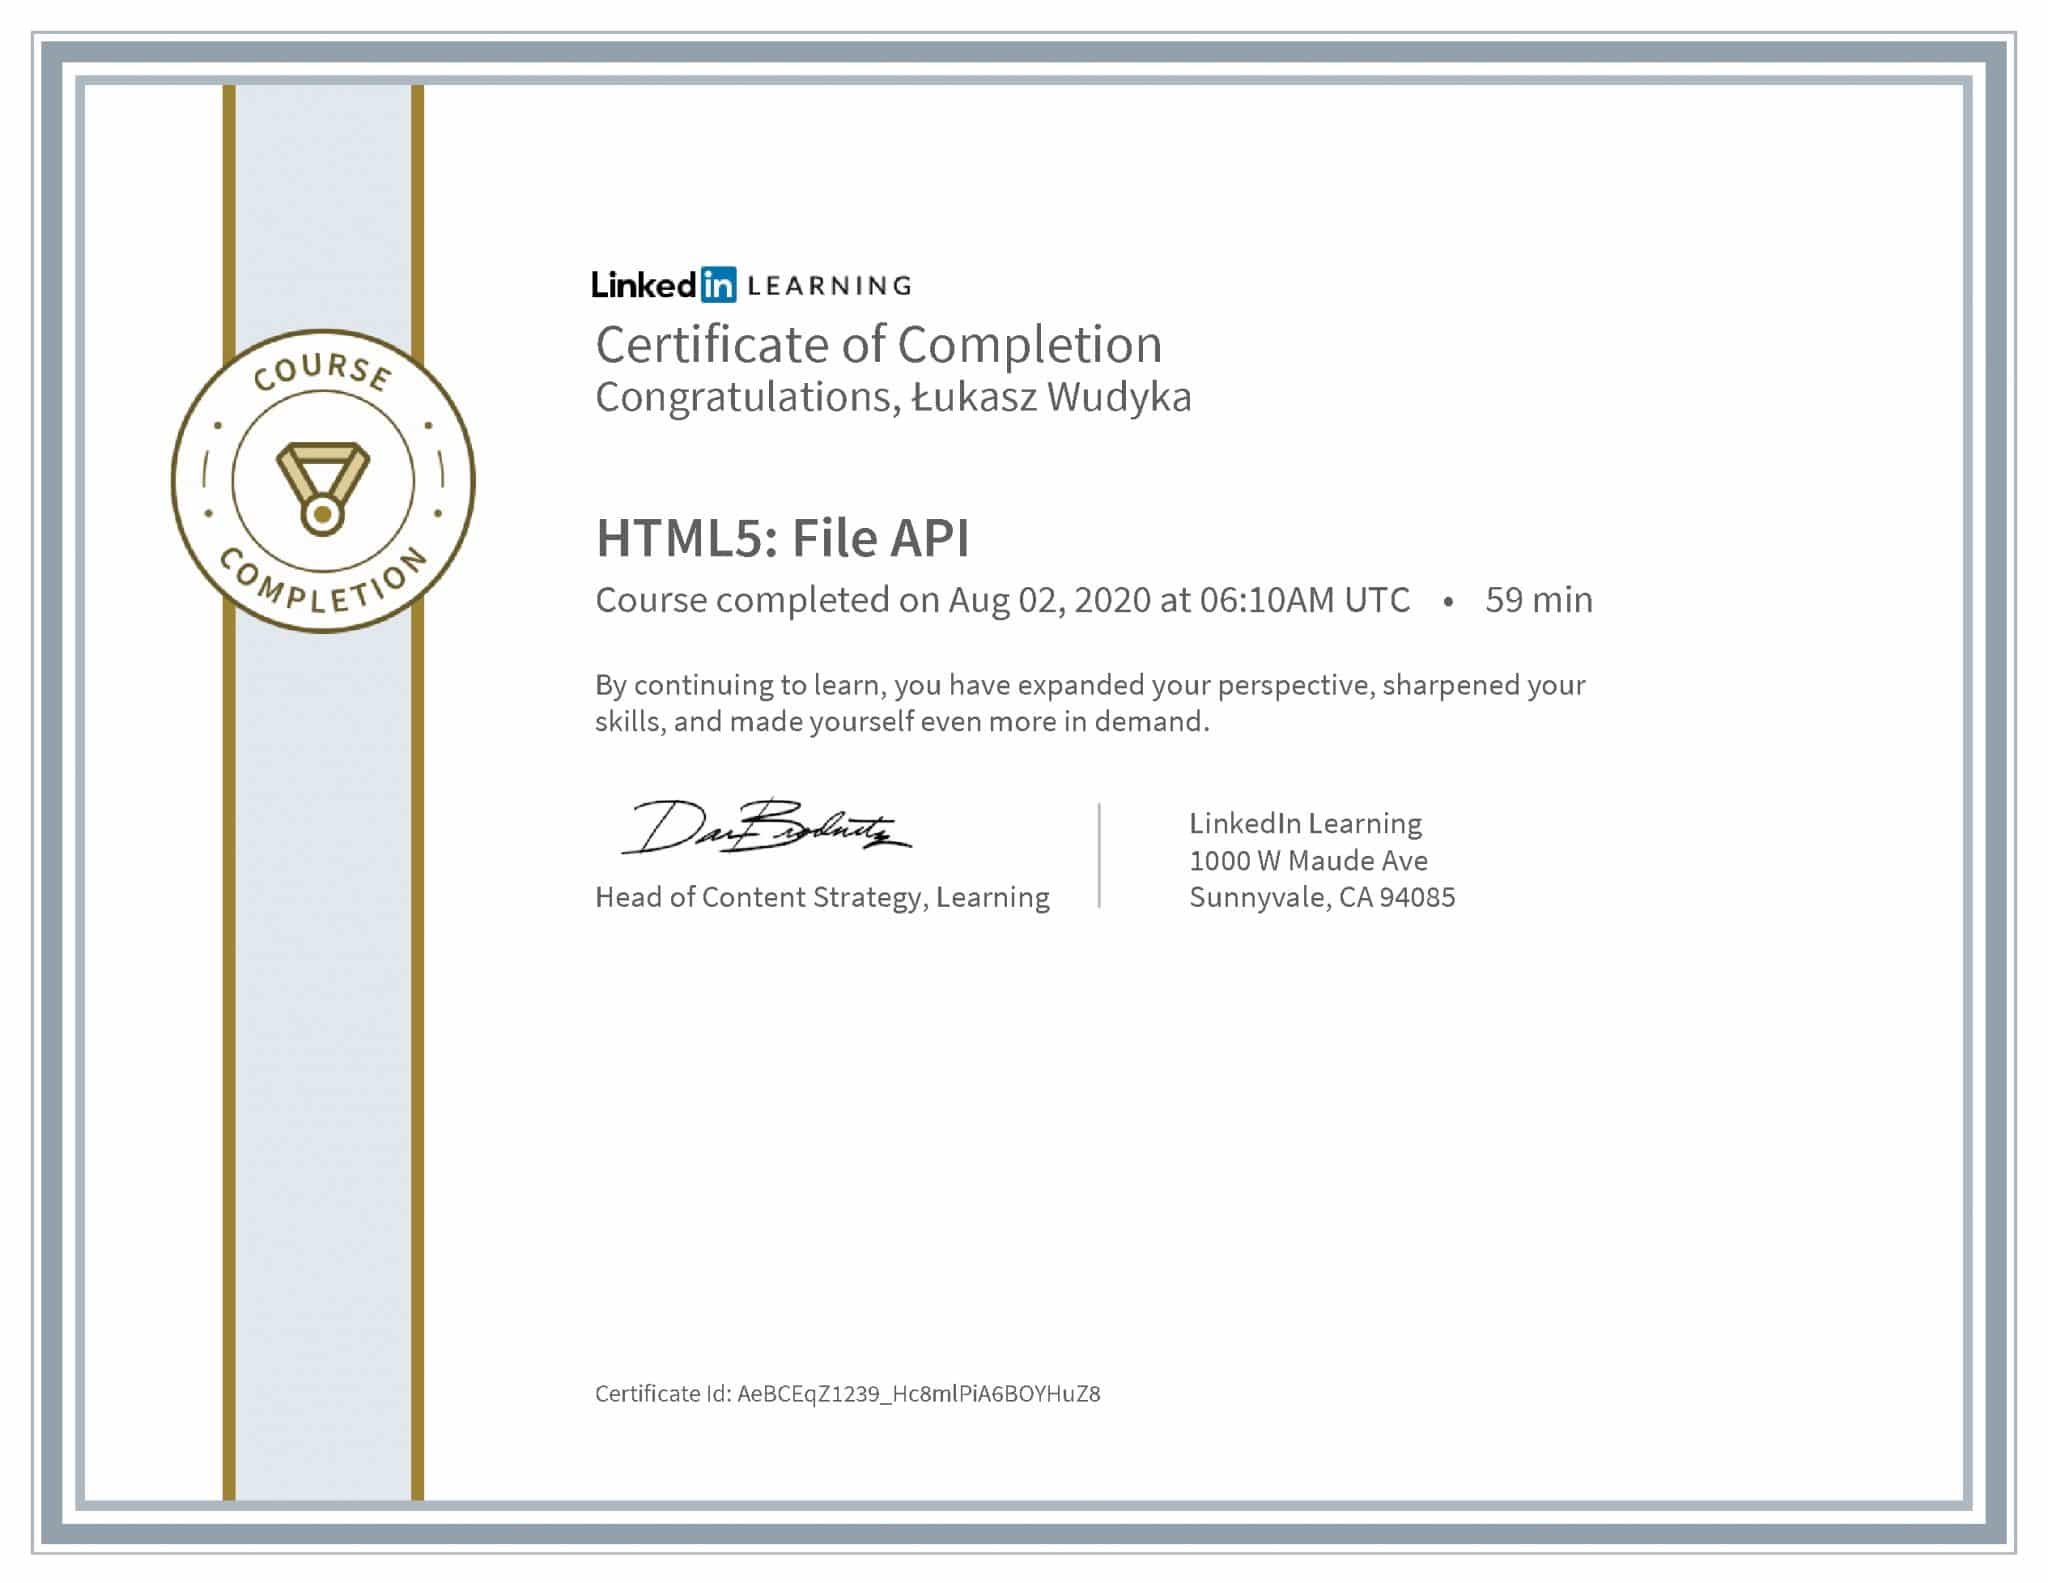 Łukasz Wudyka certyfikat LinkedIn HTML5: File API